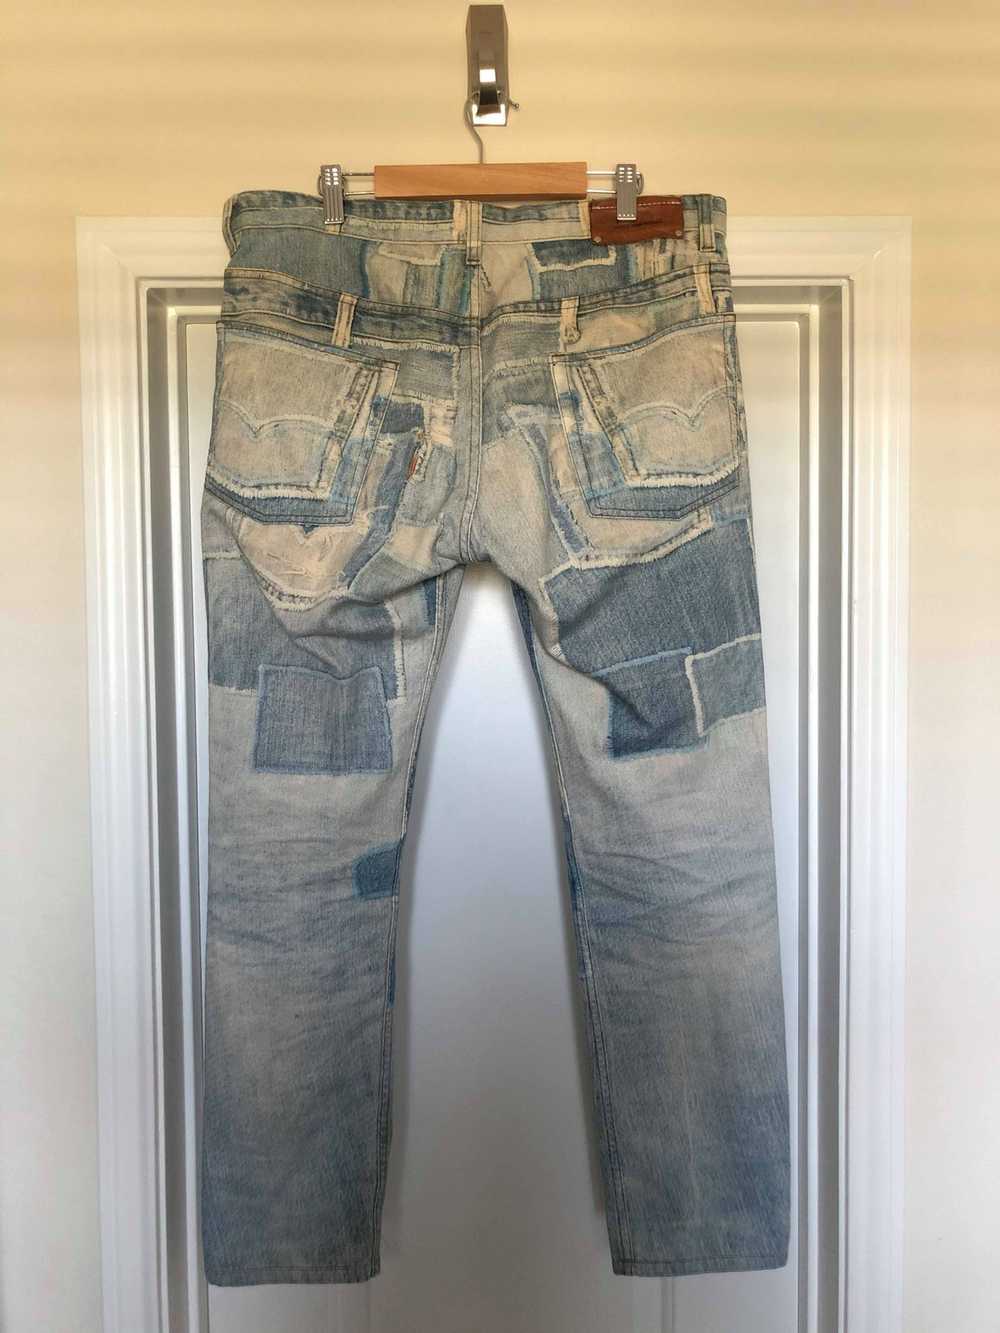 Dries Van Noten Patchwork Jeans - image 2